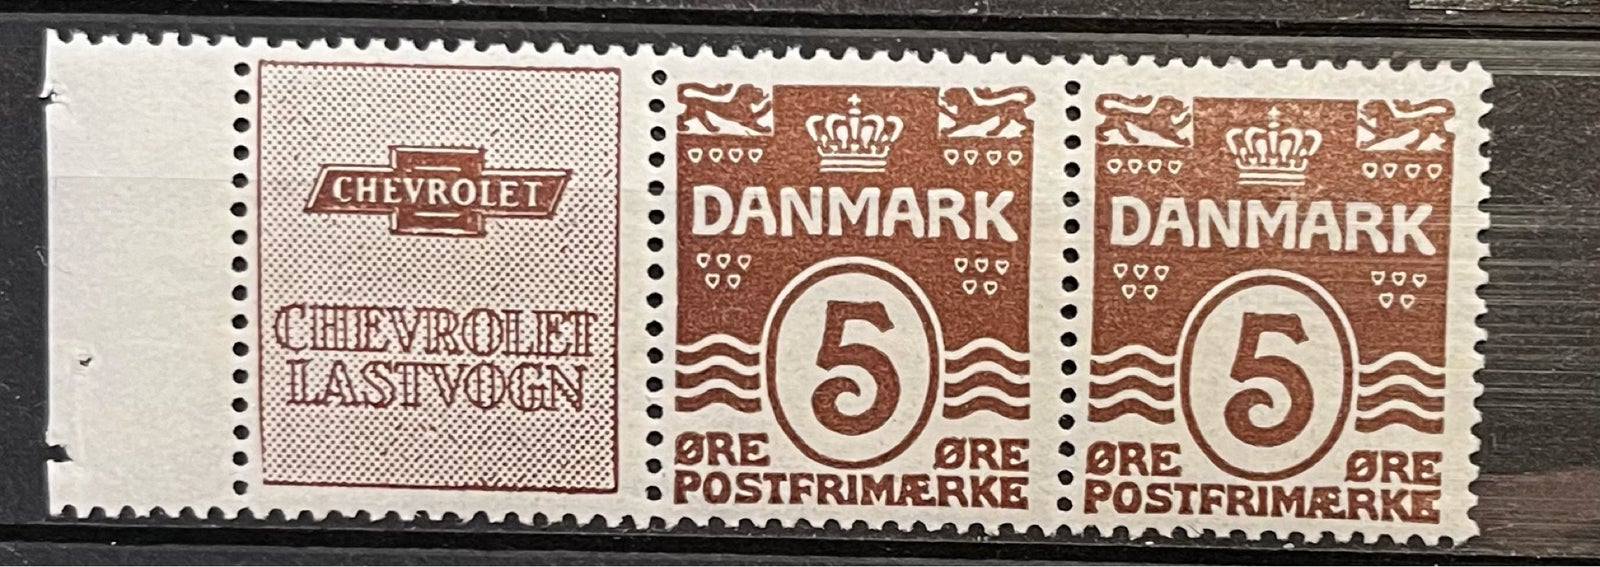 Danmark, ustemplet, Reklame no. 12